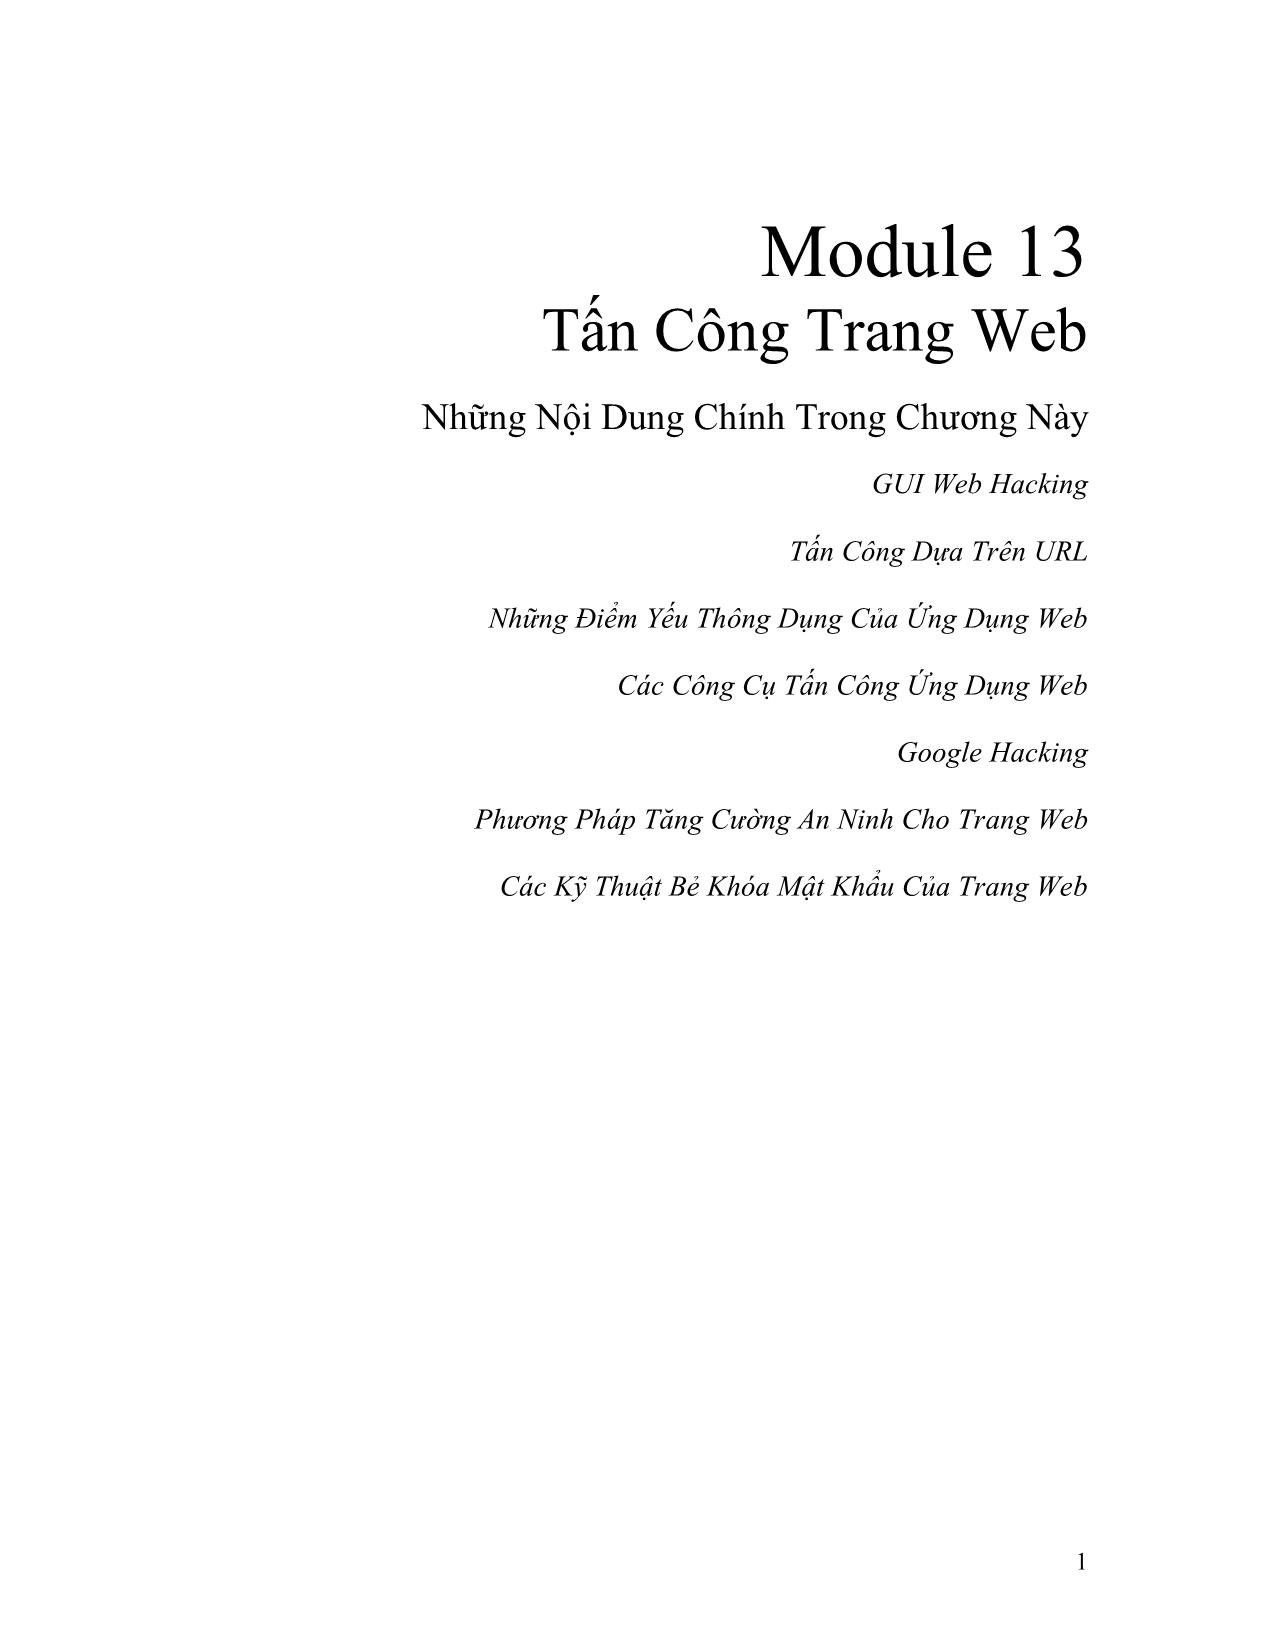 Module 13: Tấn công trang Web trang 1